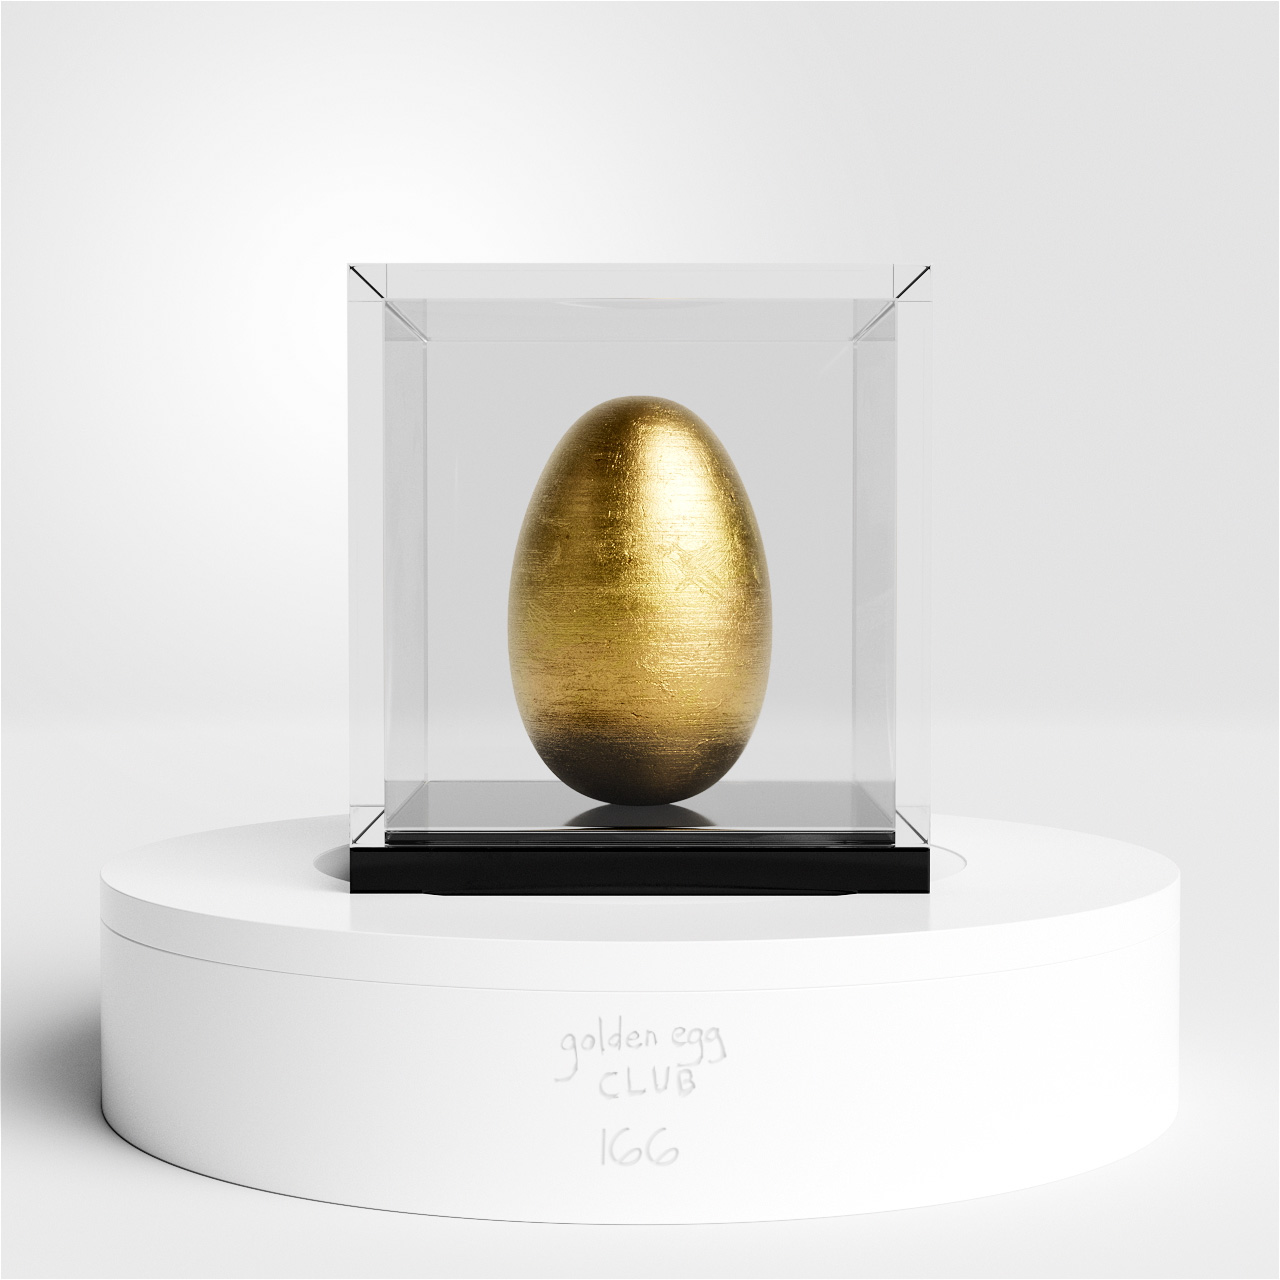 golden egg sculpture #166